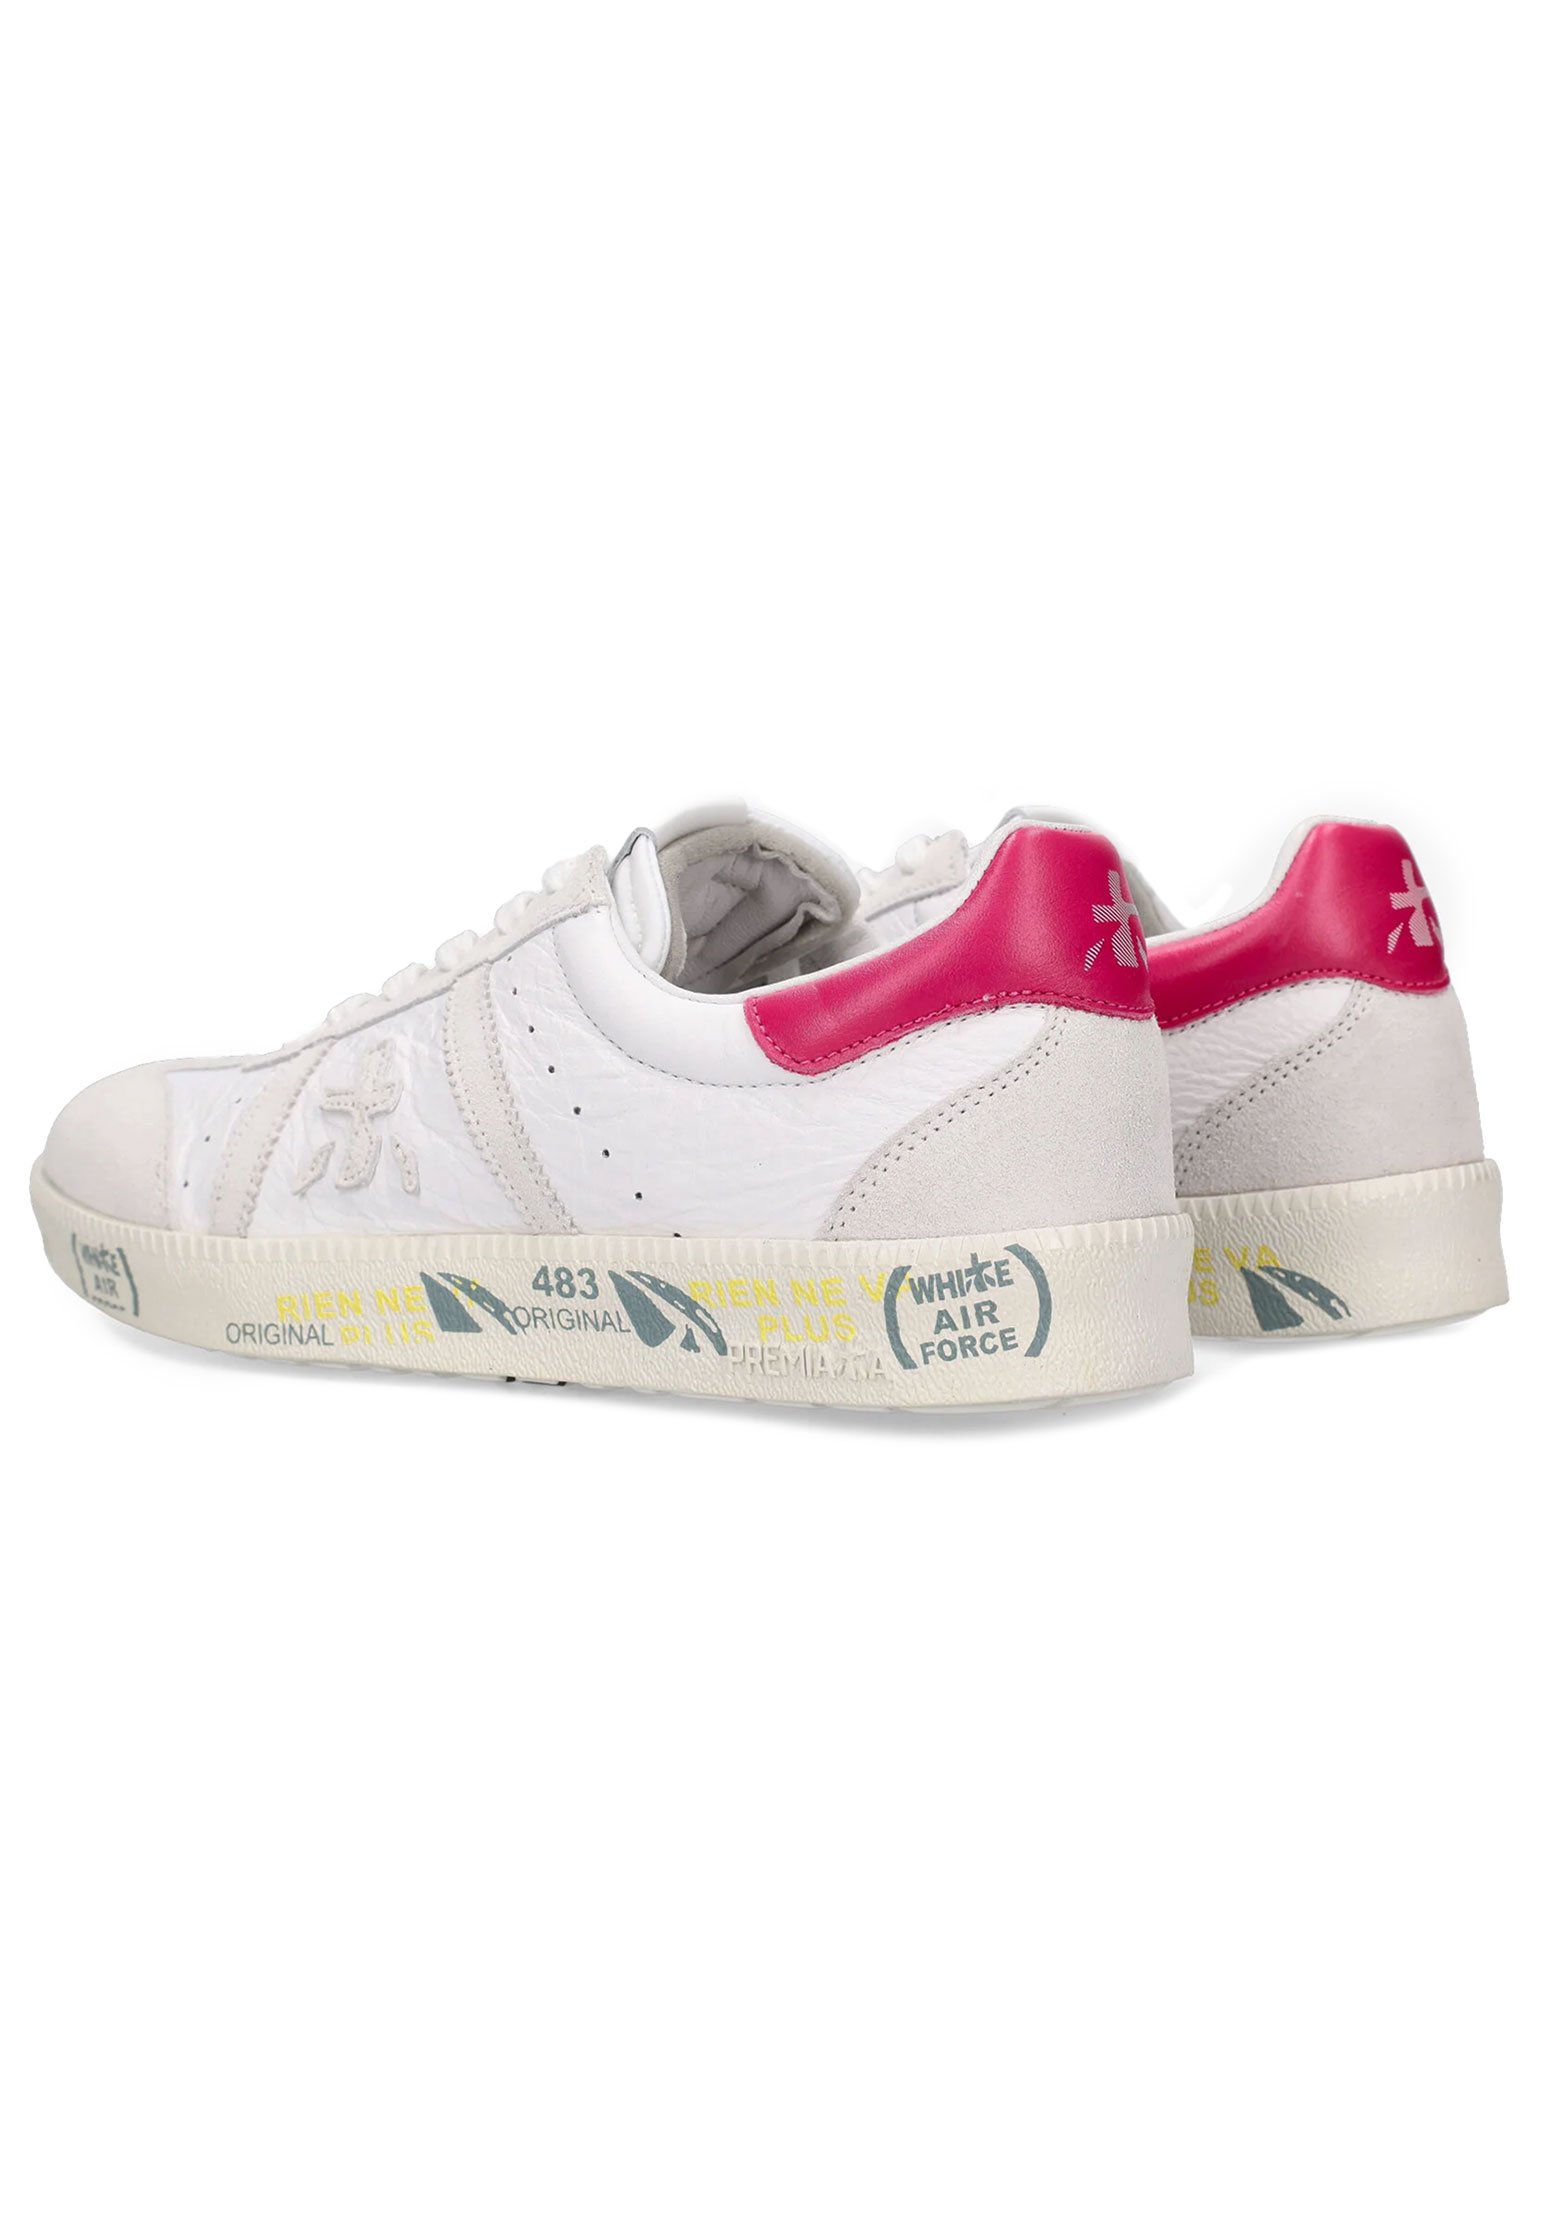 Sneakers PREMIATA Color: white (Code: 4176) in online store Allure